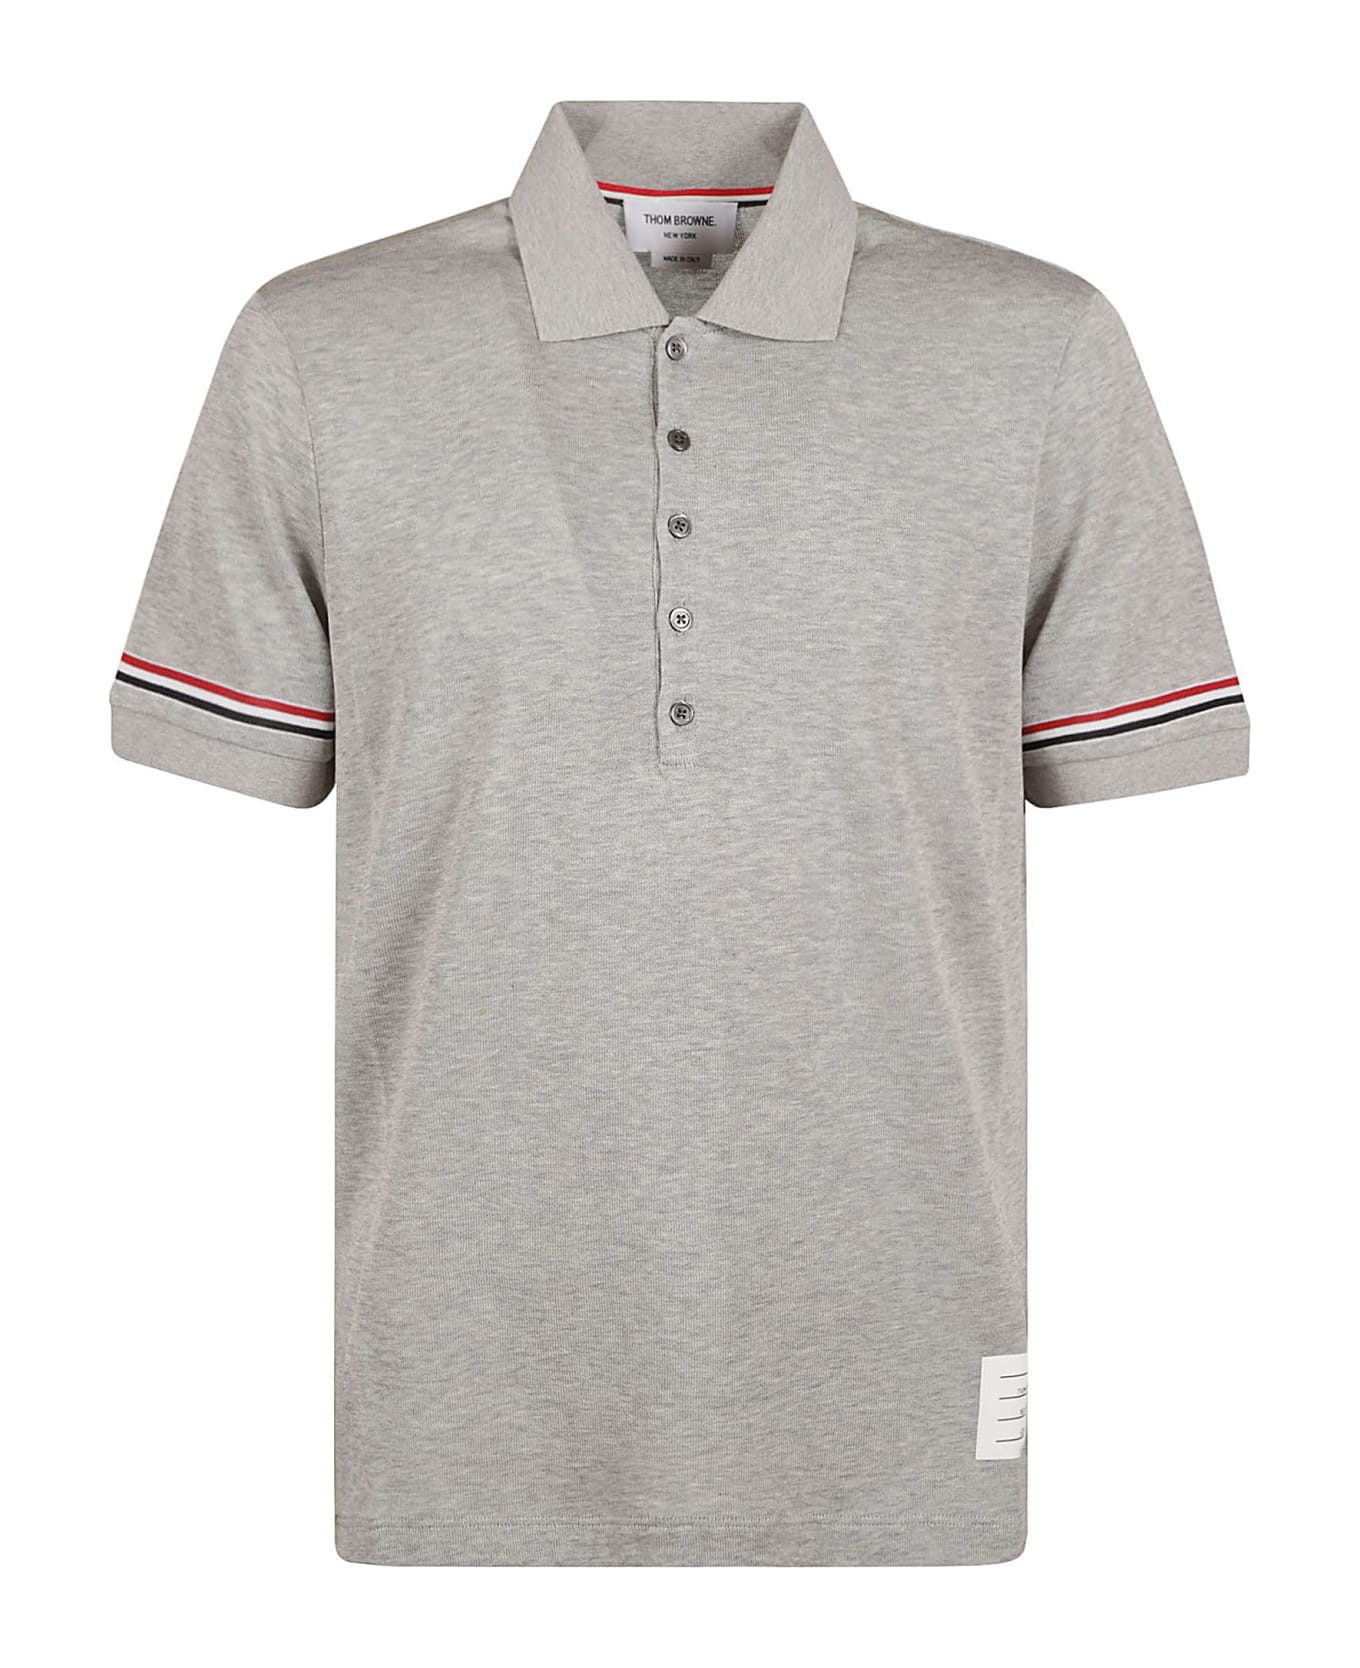 Thom Browne Rwb Polo Shirt - Medium Grey